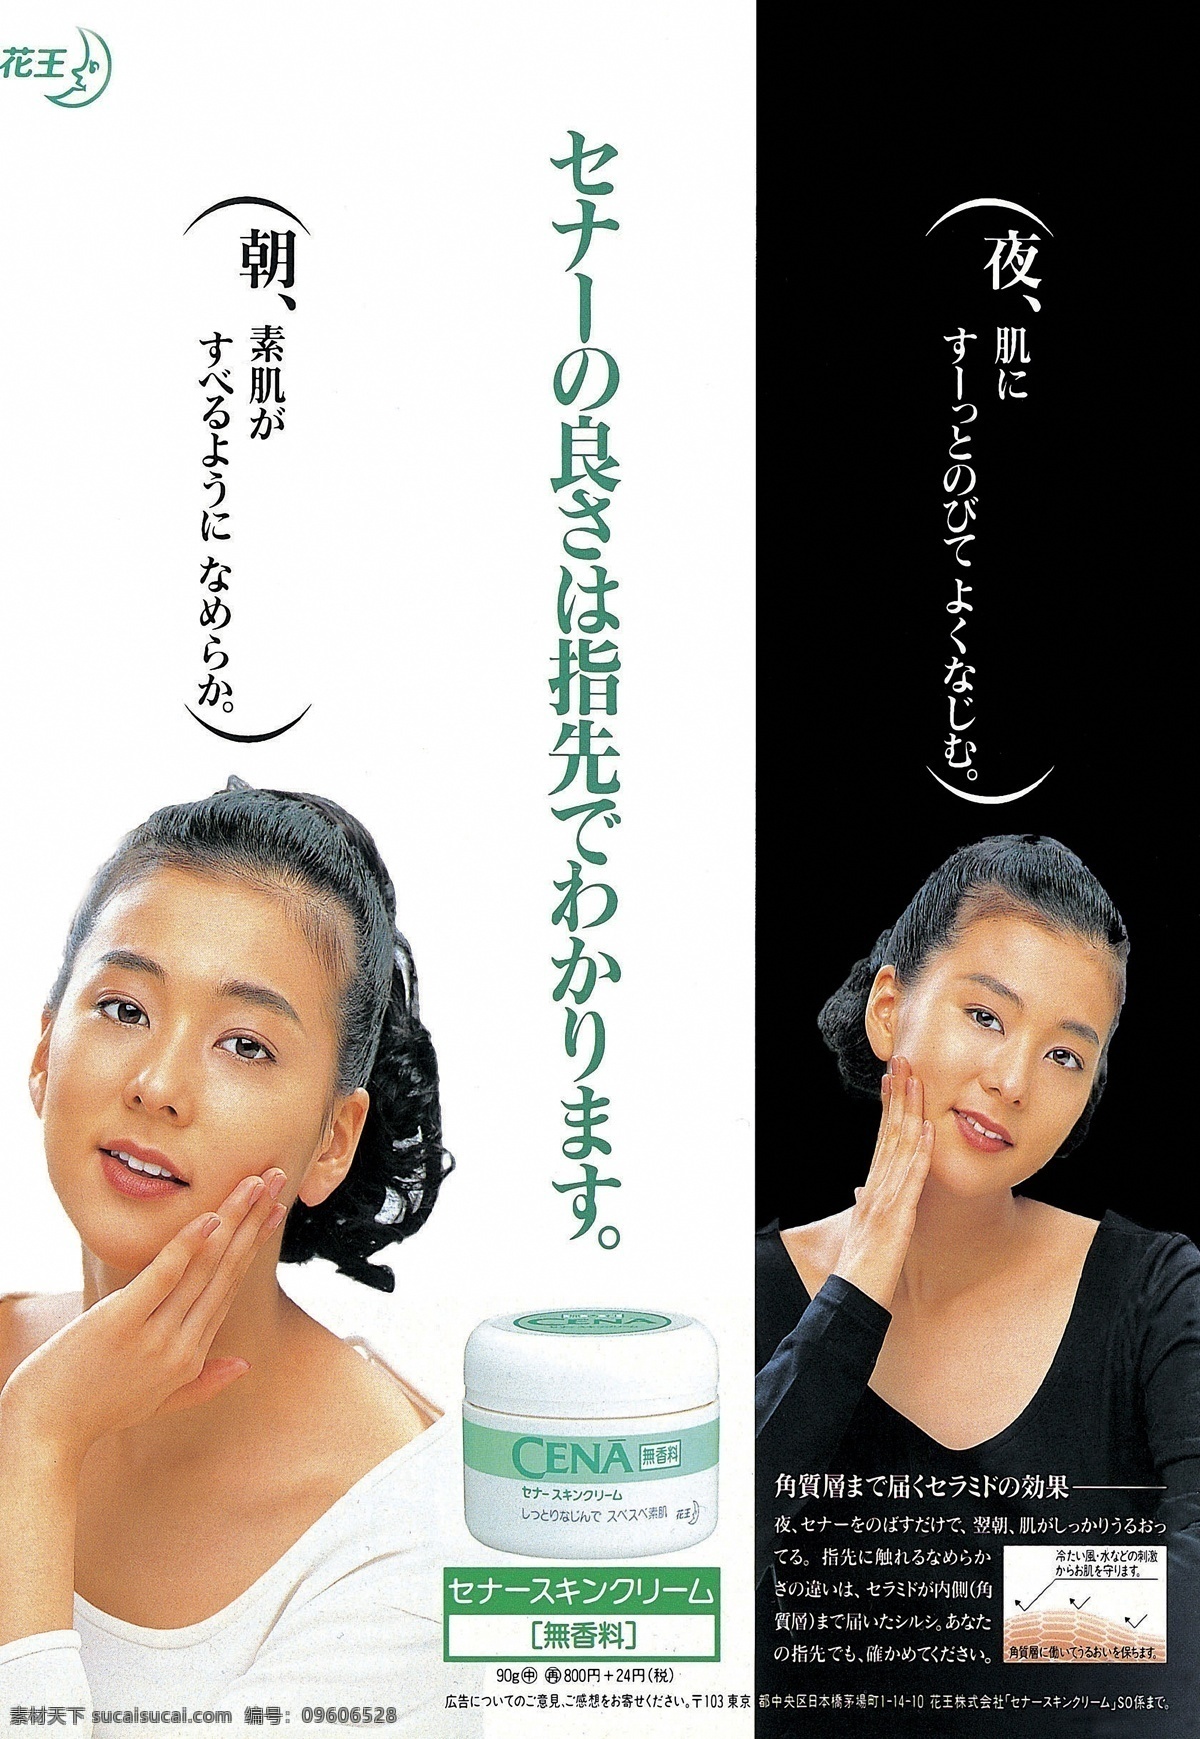 护肤品 美容 广告 平面 设计素材 美容化妆 平面创意 平面设计 白色